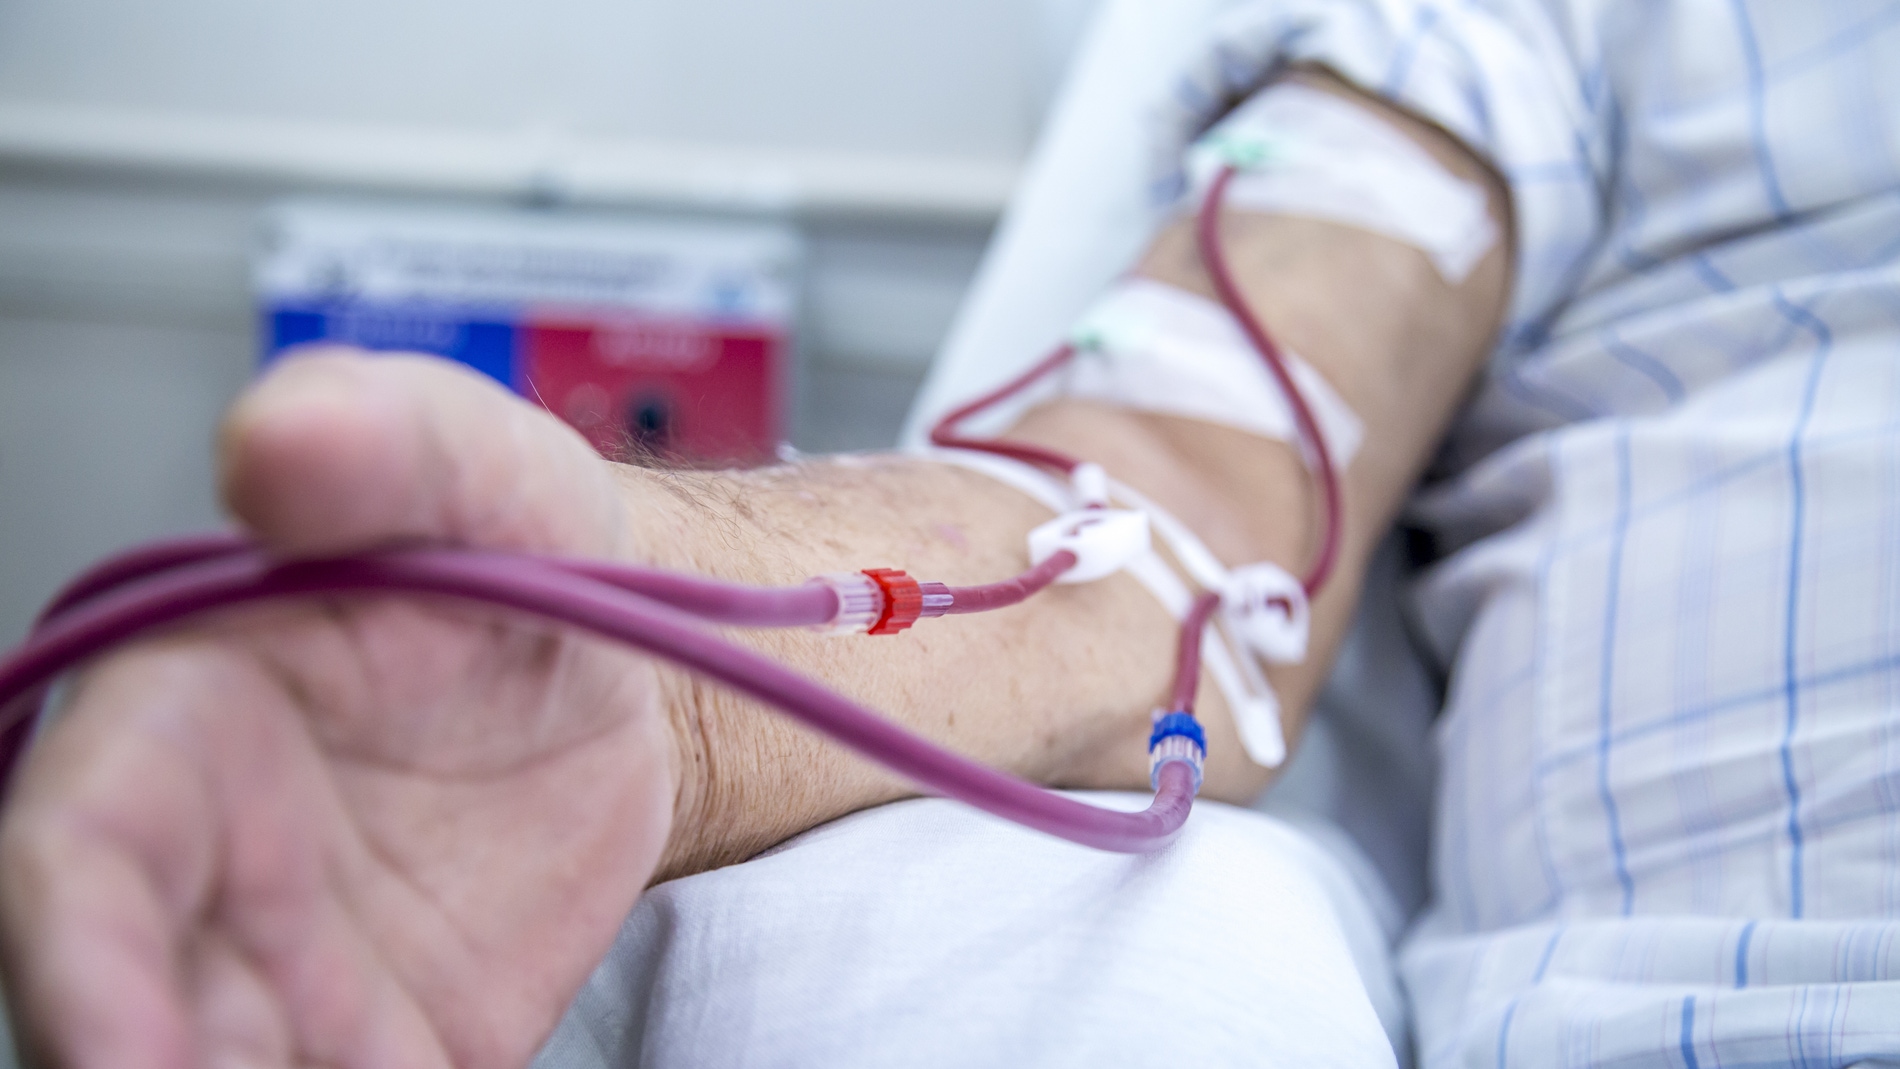 Donar plasma sanguineo de pacientes curados de la COVID 19 para tratar casos graves